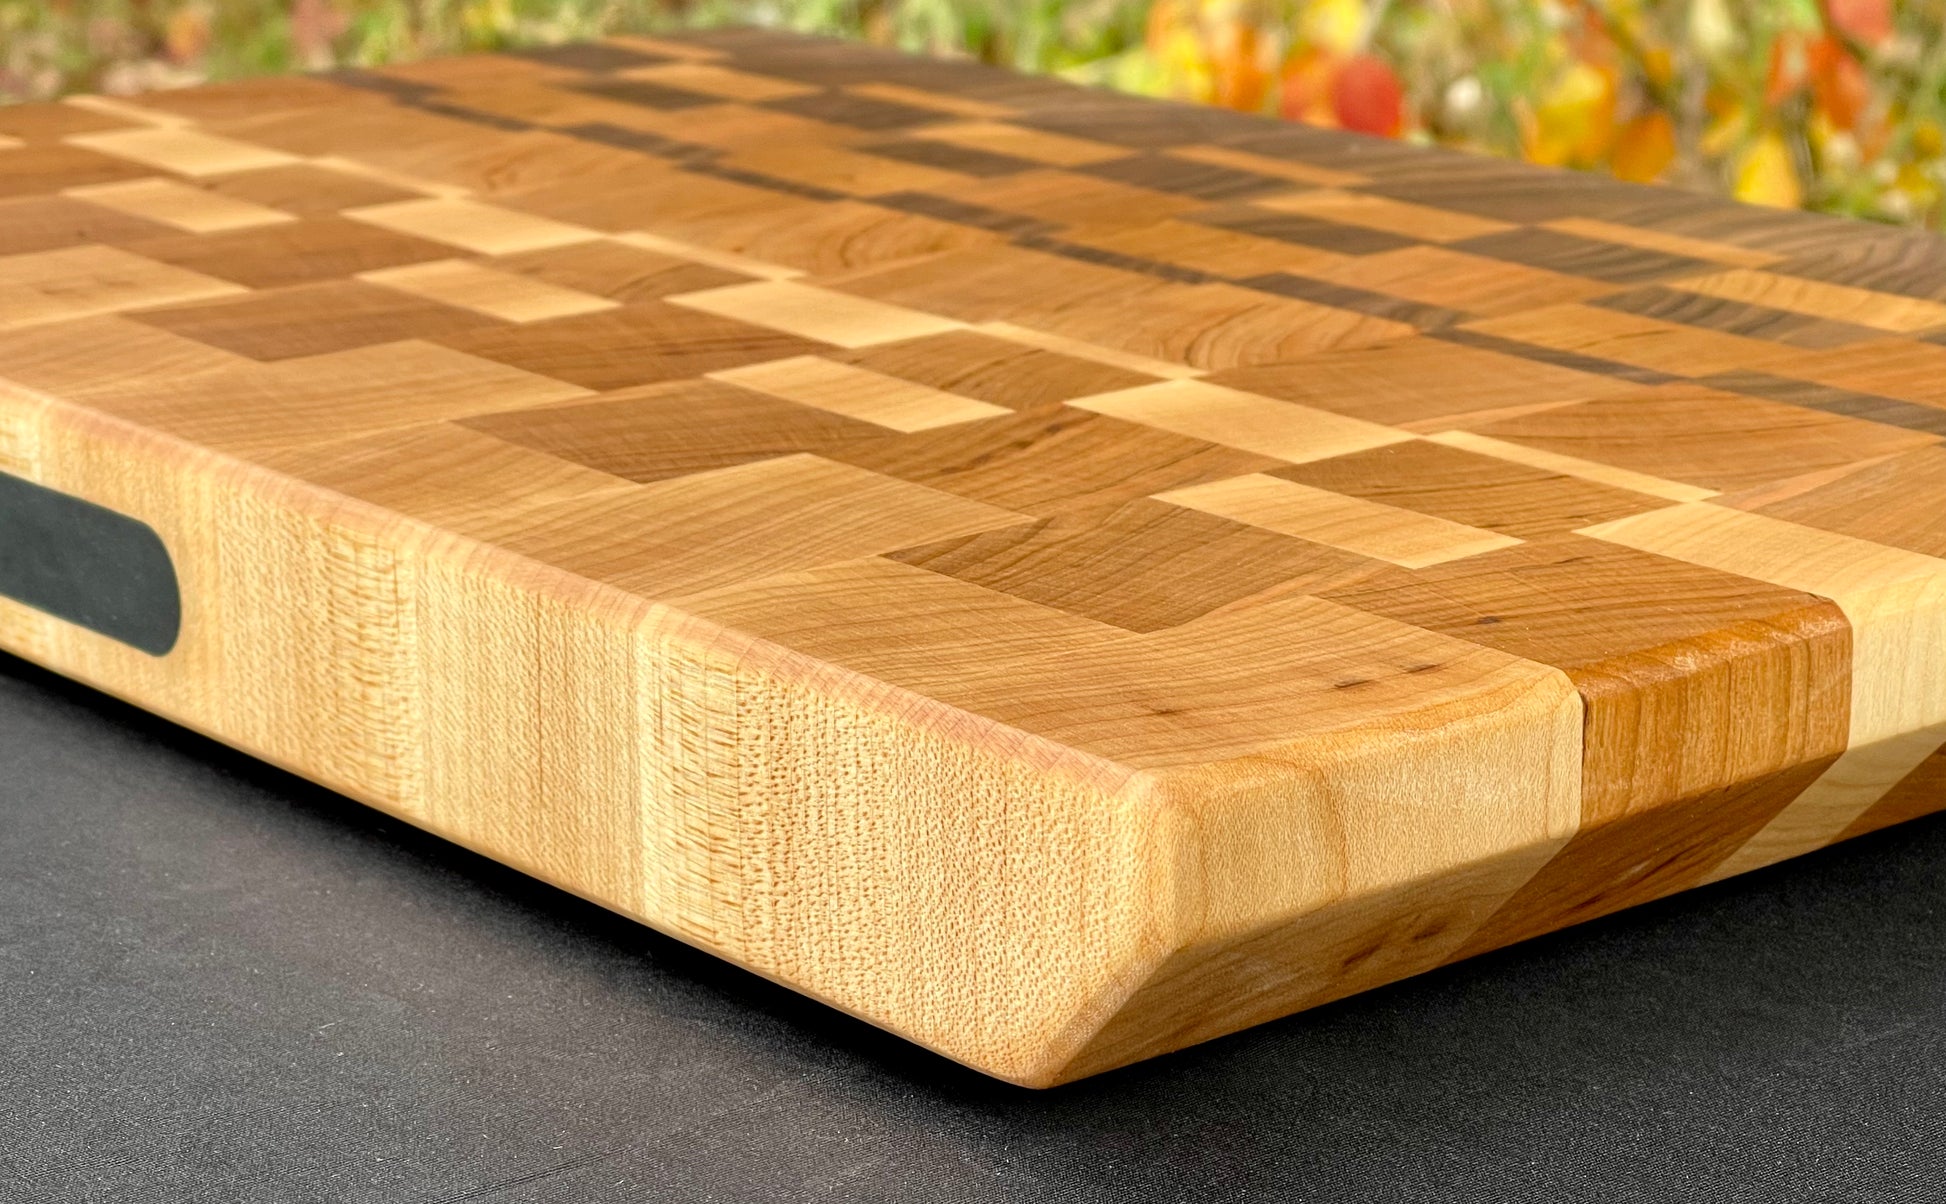 Exotic Cutting Board | Edge grain Cutting board | Handmade Chopping Board  |Square Cutting Board | Serving board |Kitchen Board for Cutting